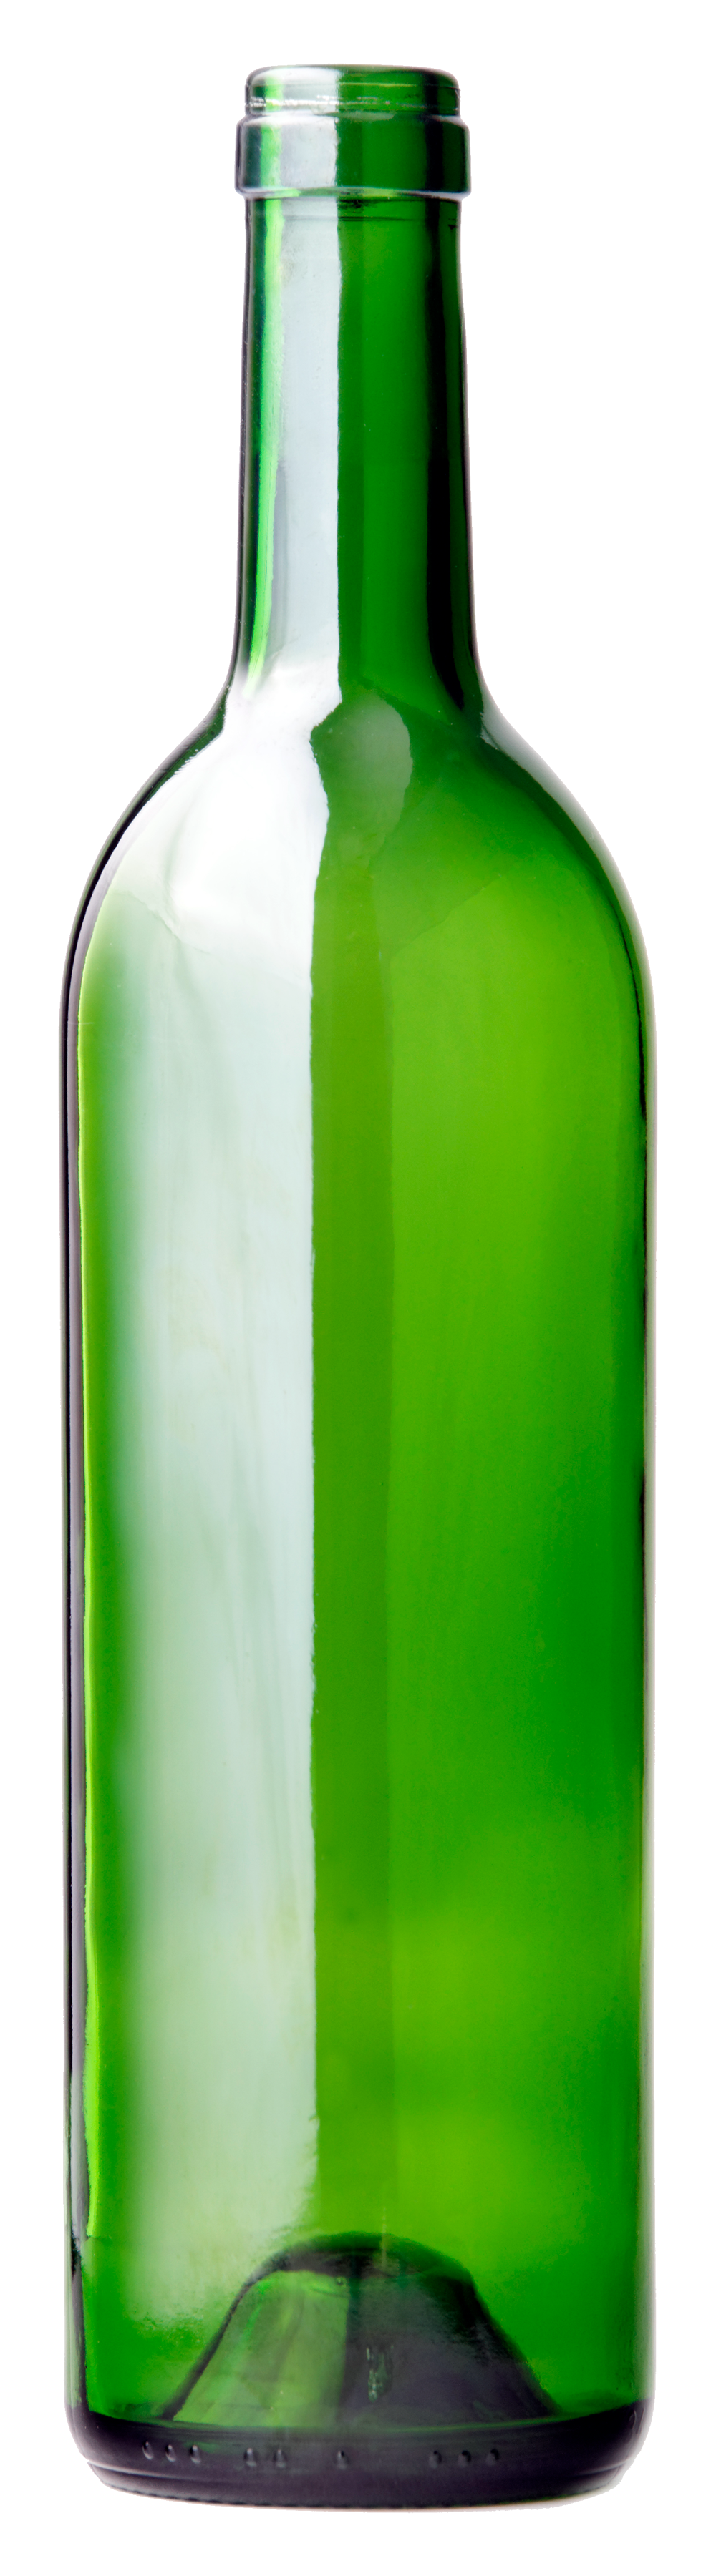 Weinflasche aus grünem Glas